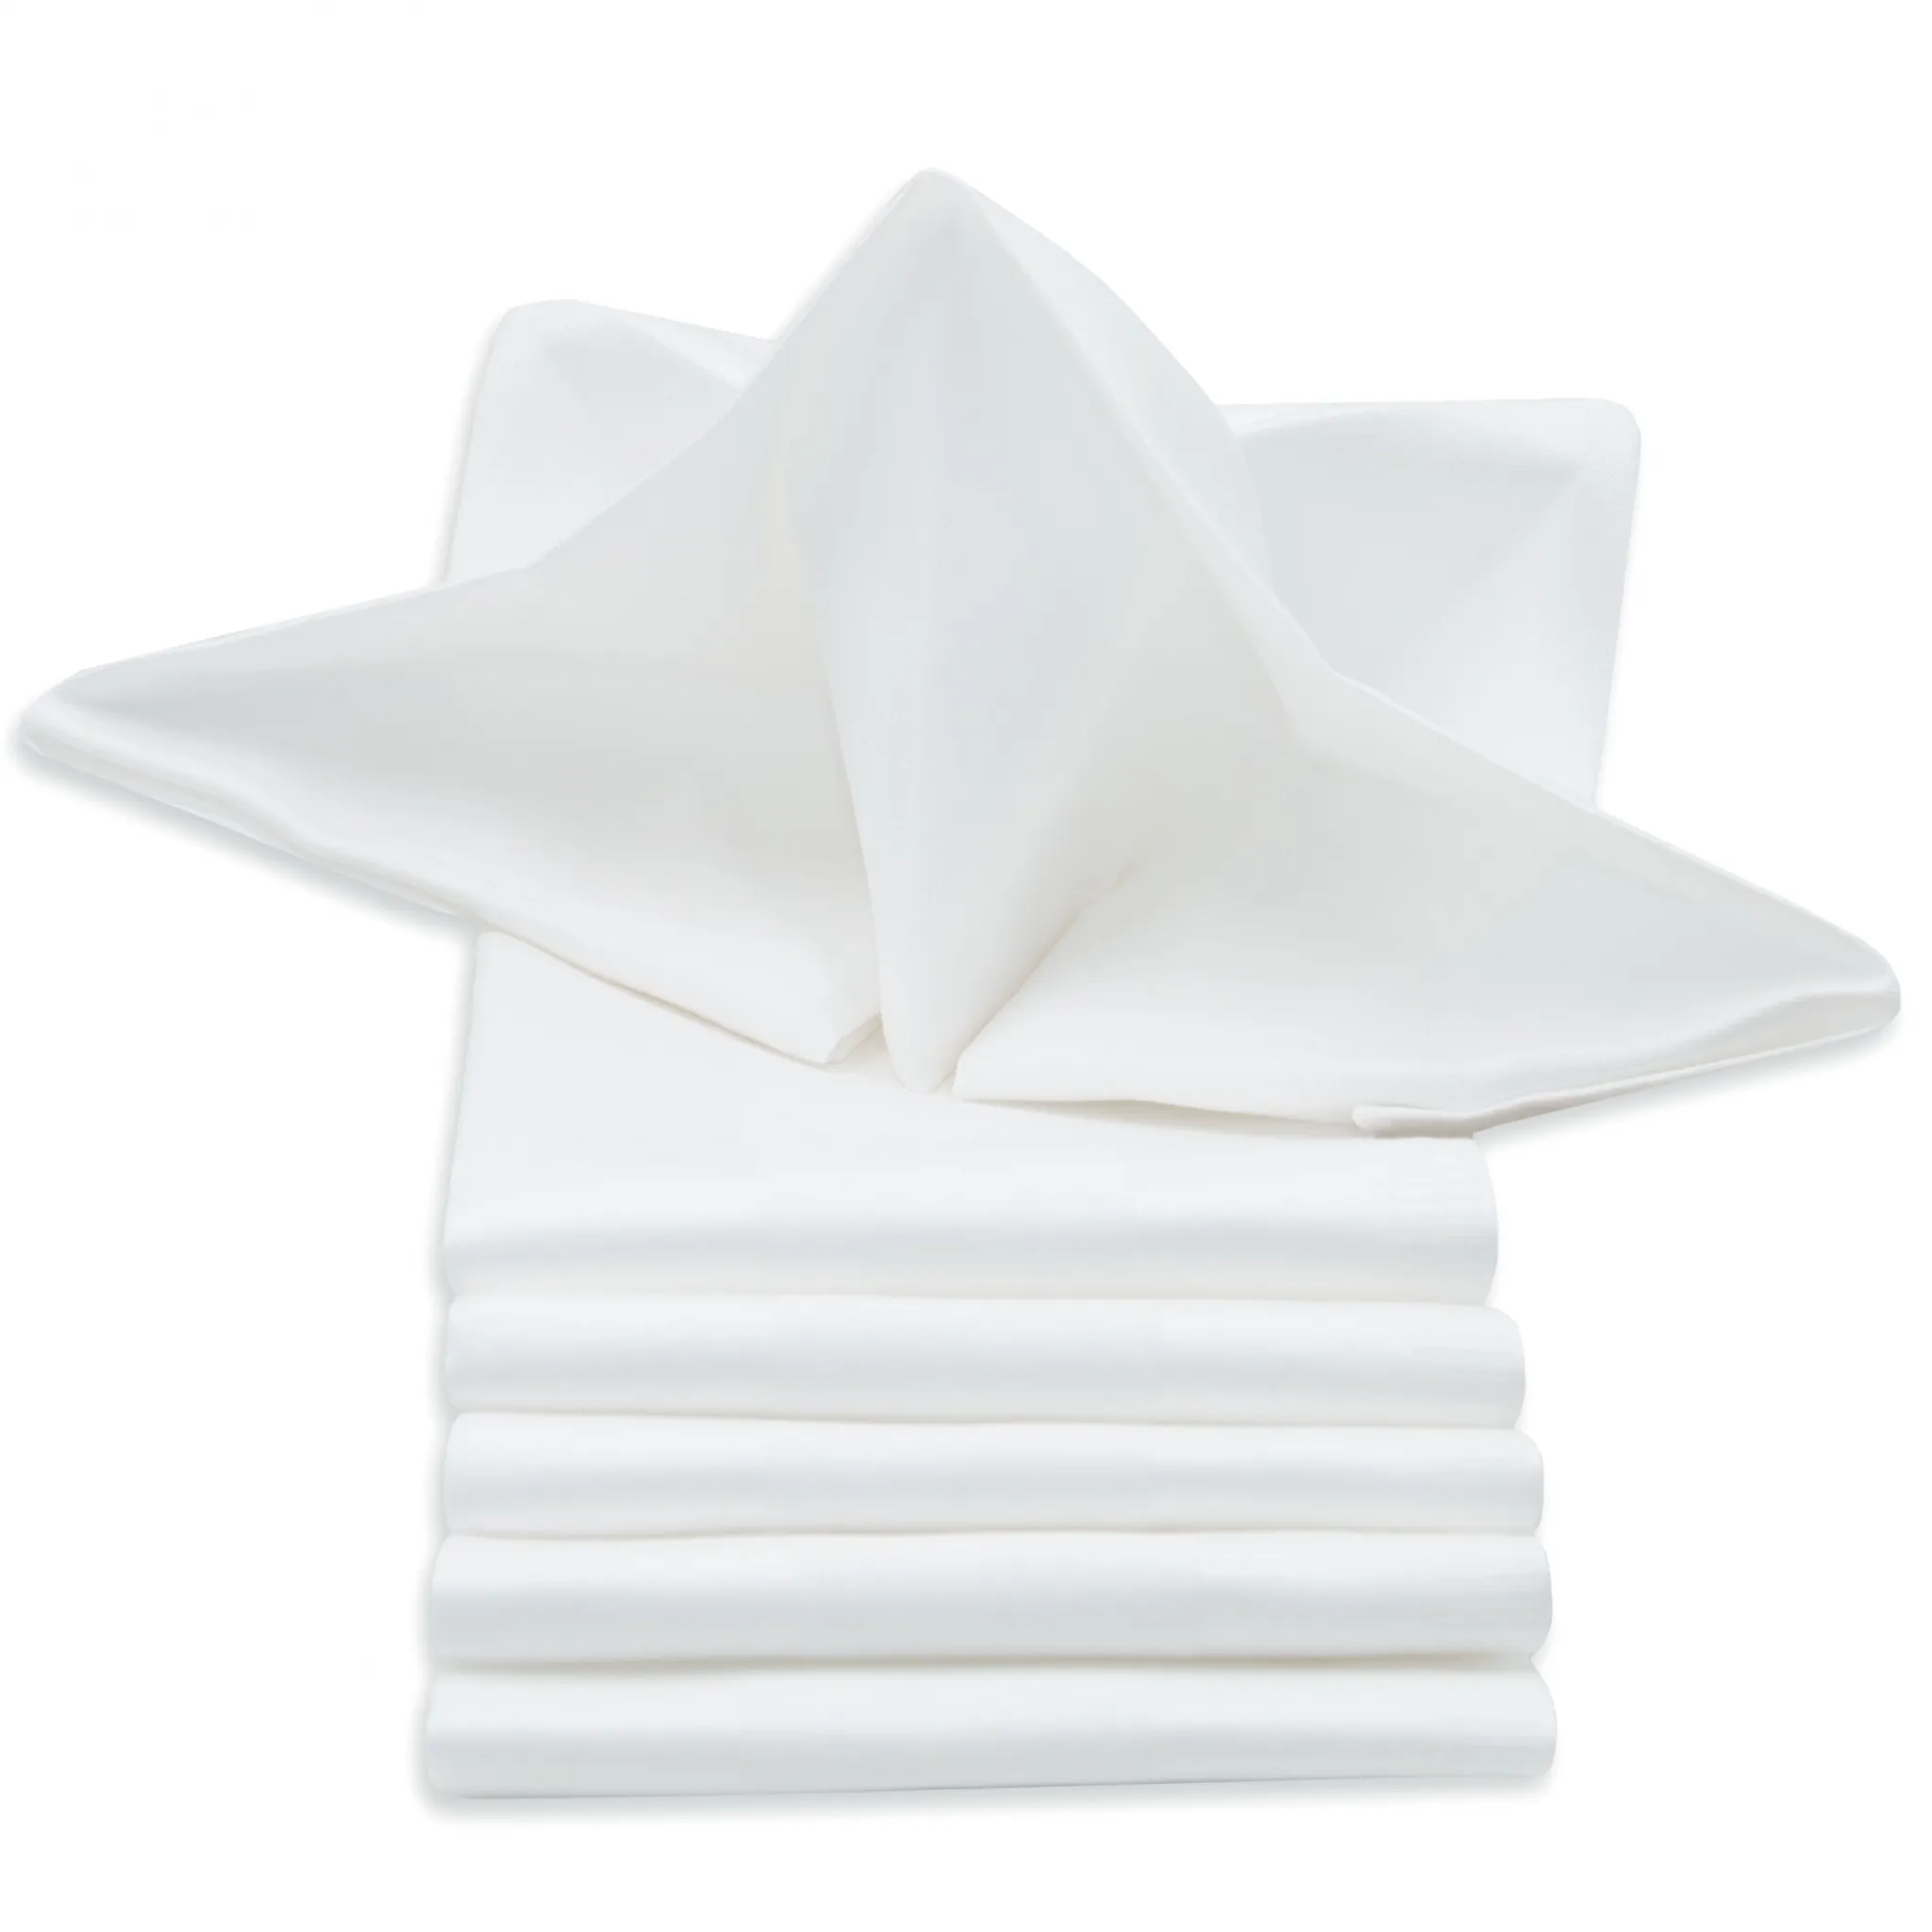 Servietten 6er-Set Stoffservietten aus Baumwolle 50 x 50 cm für Hochzeit Gastro 